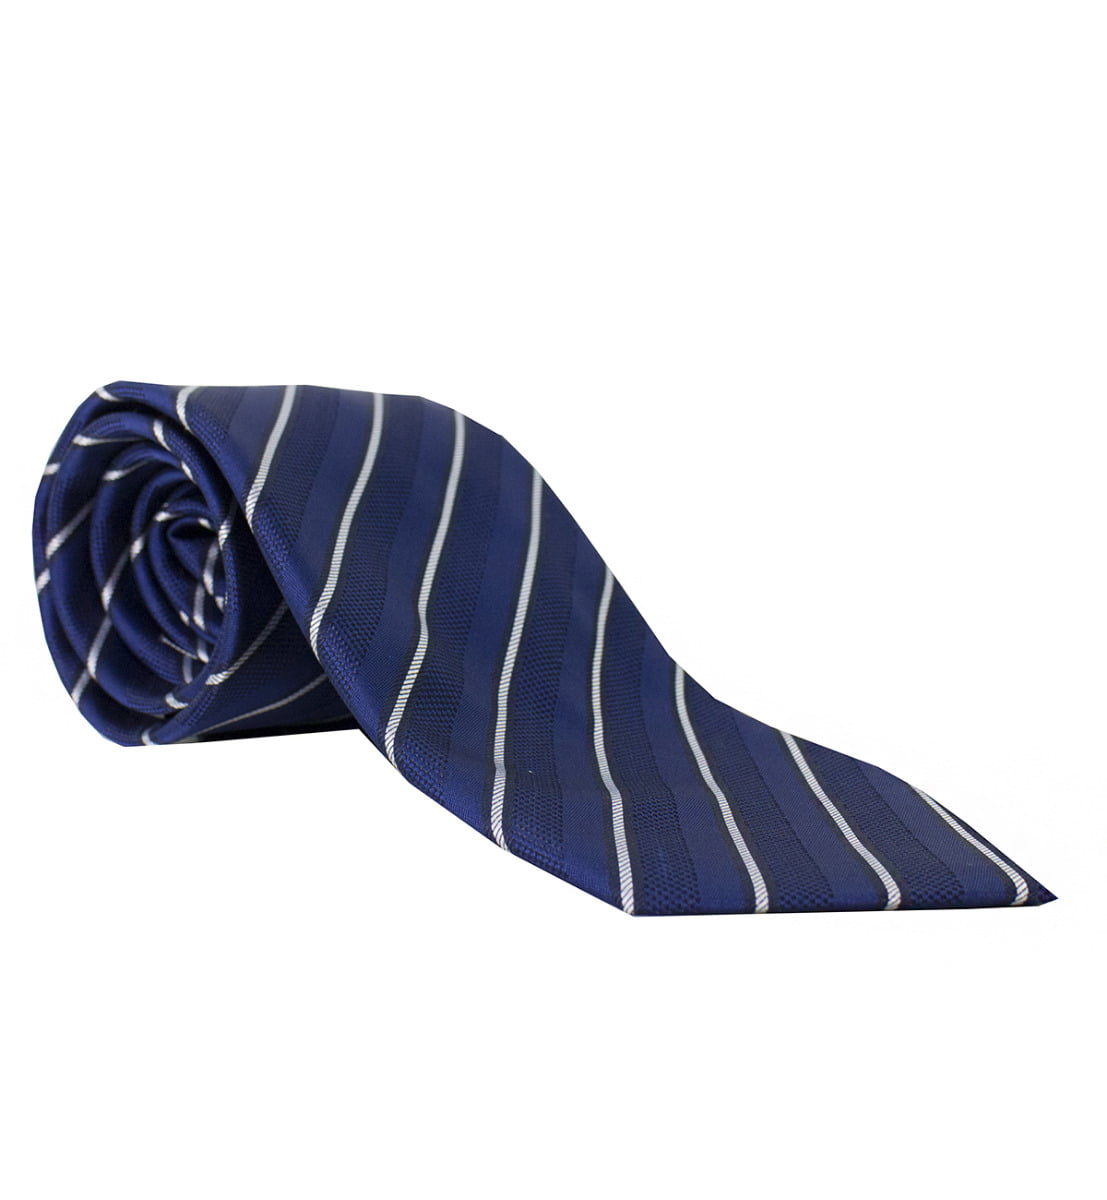 Cravatta uomo bluette righe diagonali bianche 8cm di larghezza made in italy